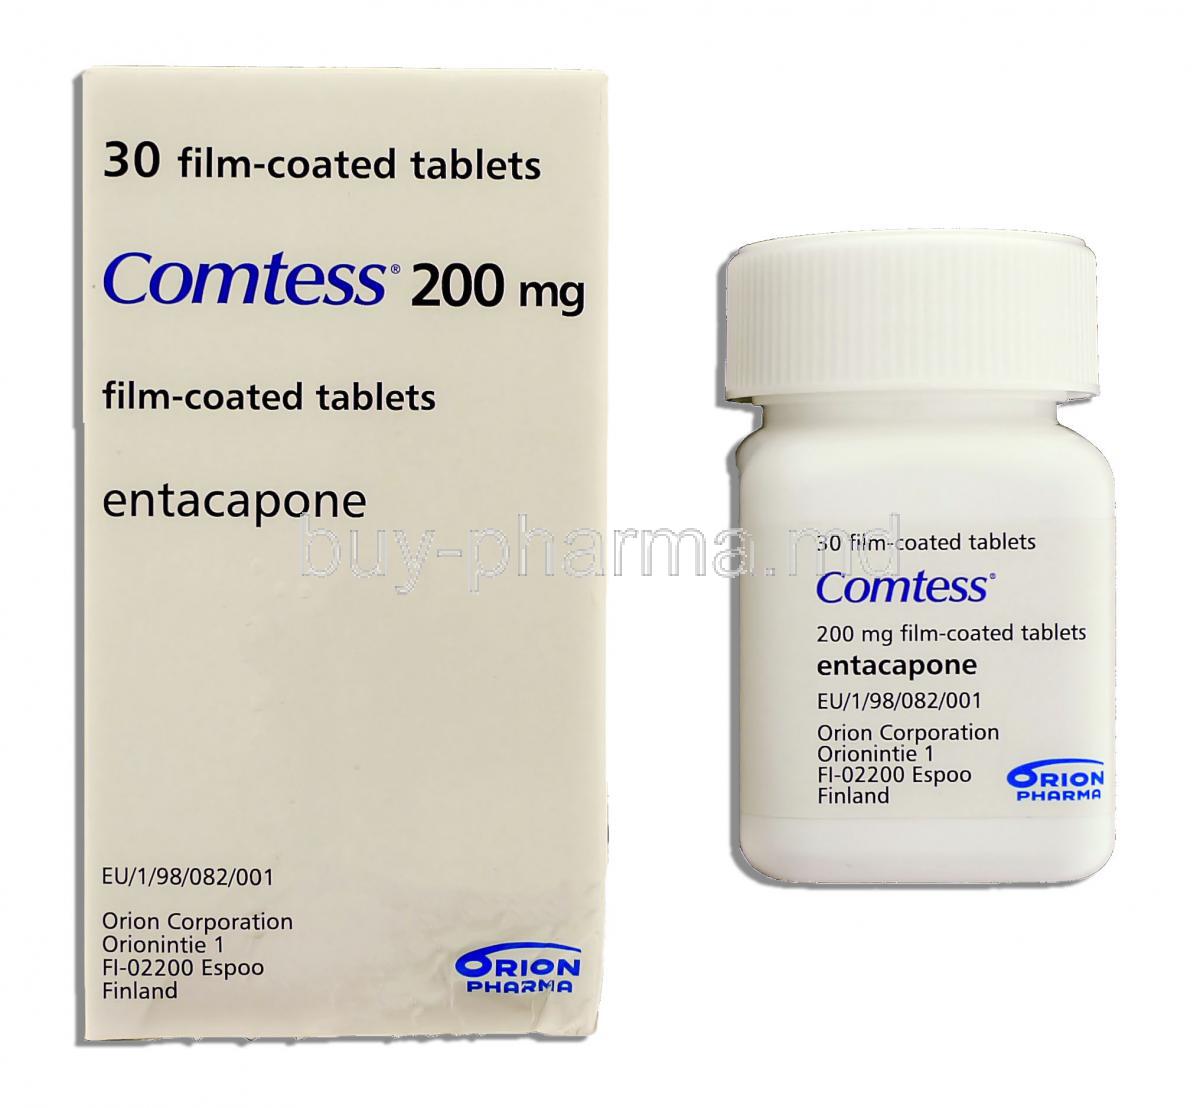 Comtess 200 mg